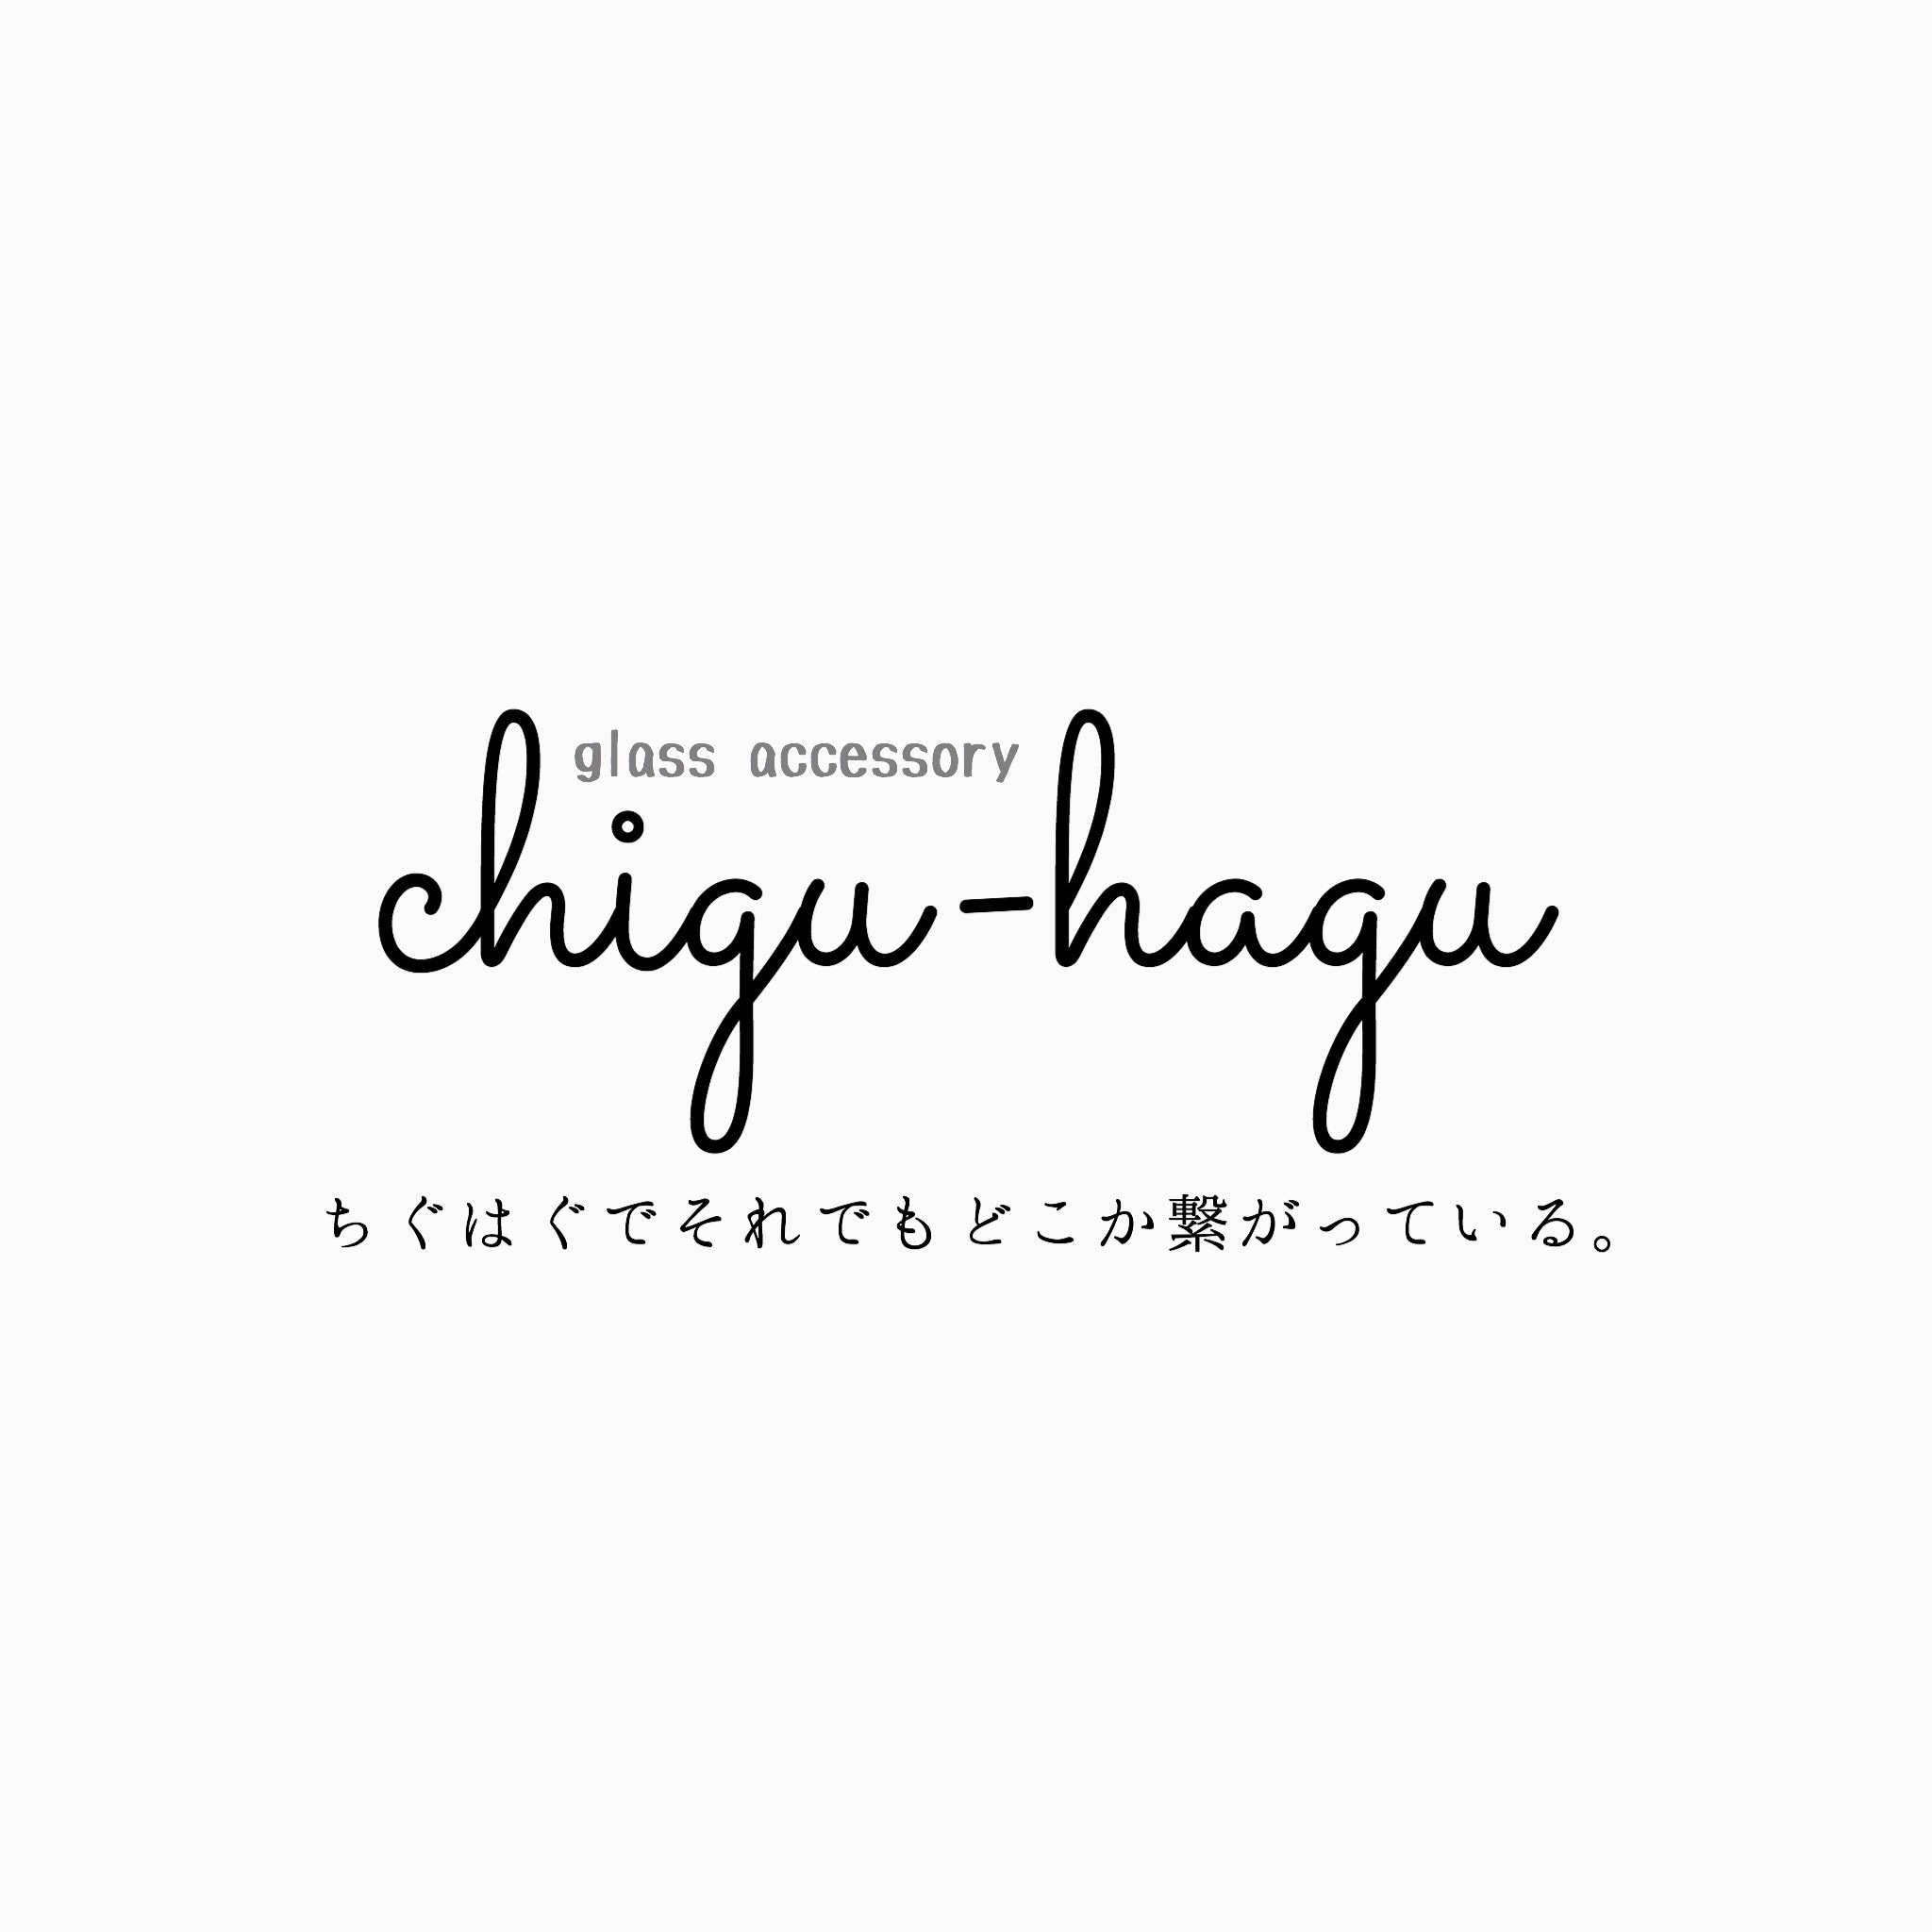 chigu-hagu